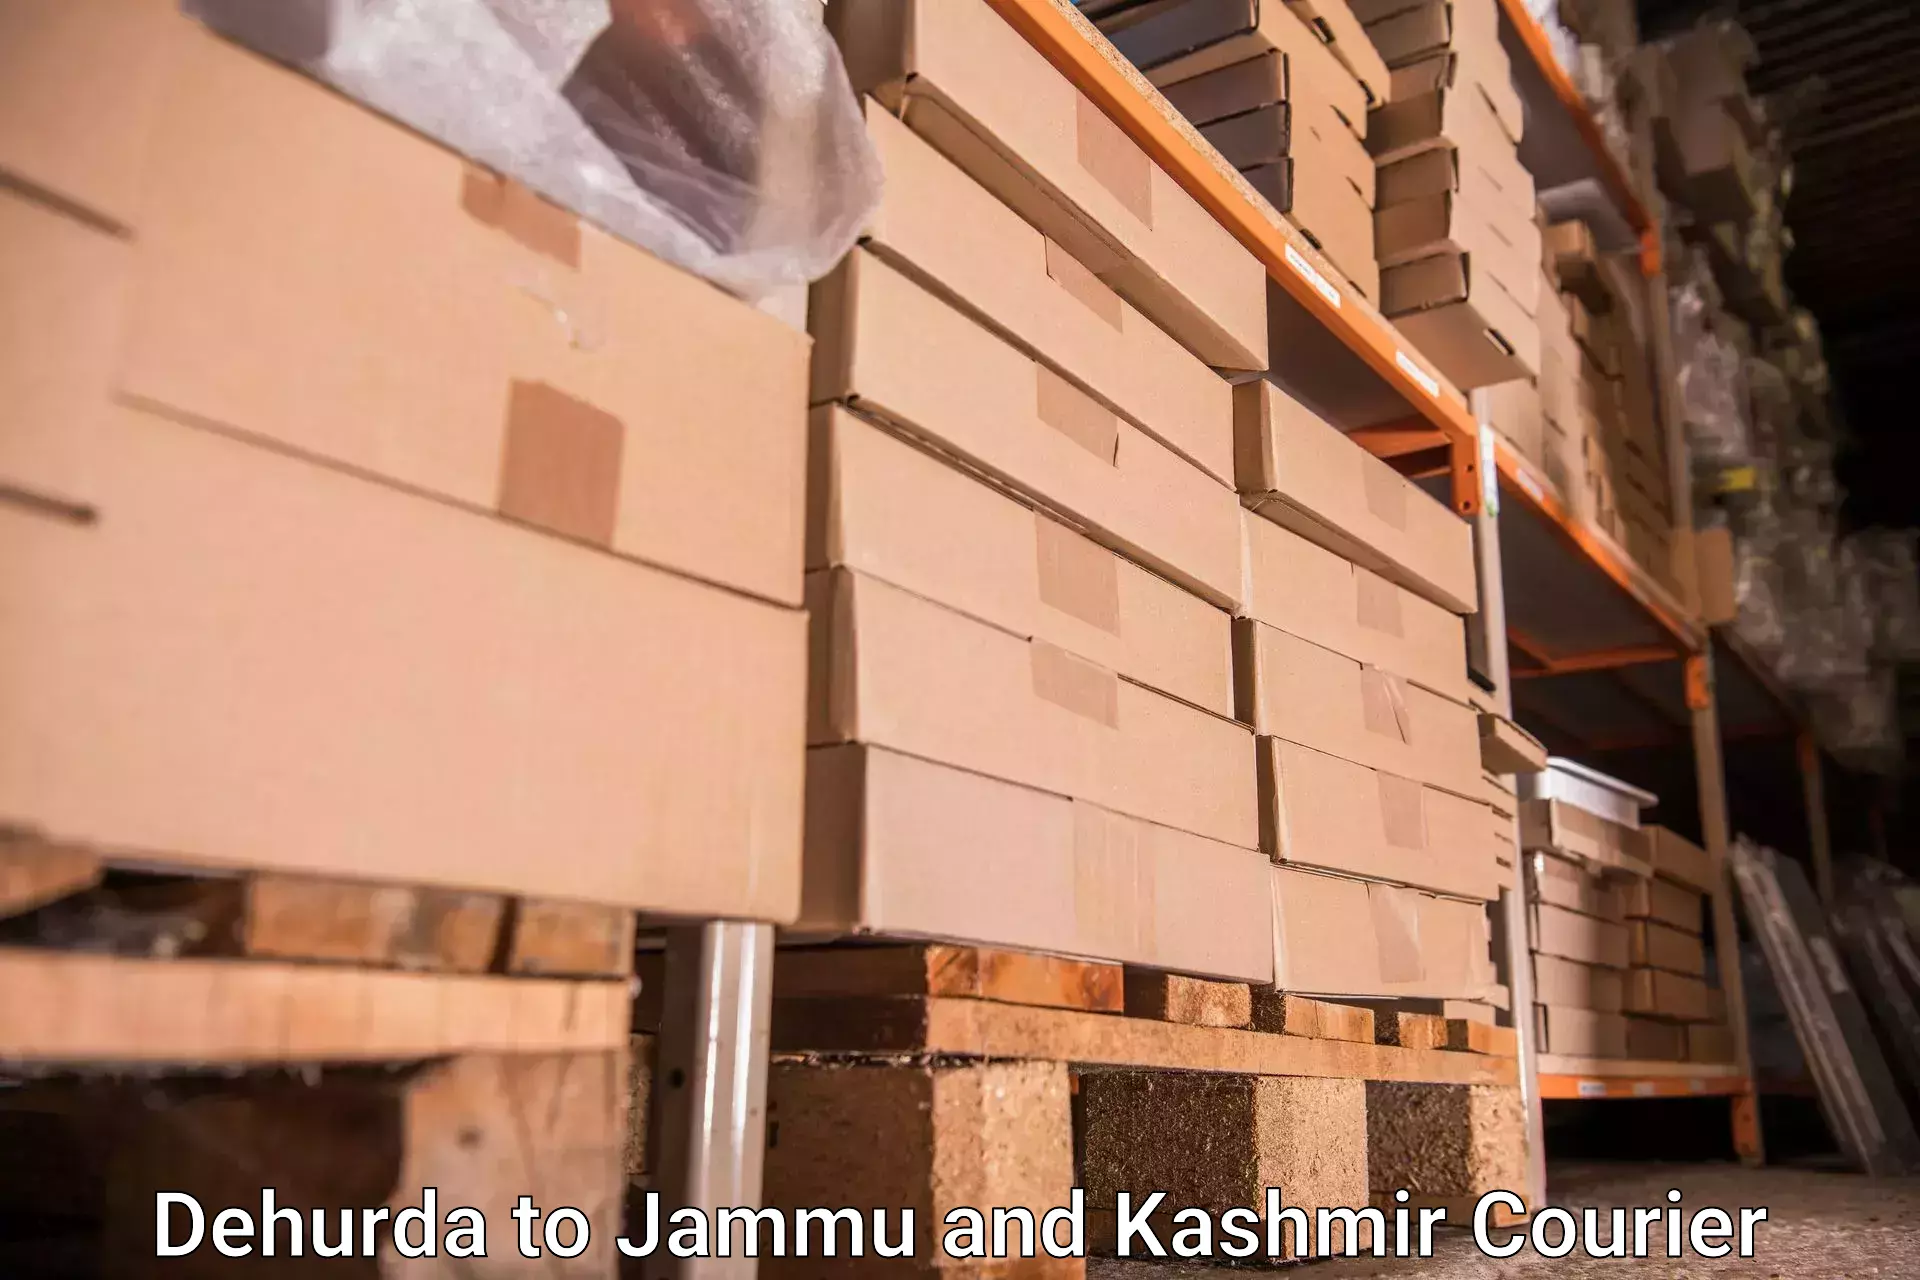 Baggage courier operations in Dehurda to Srinagar Kashmir